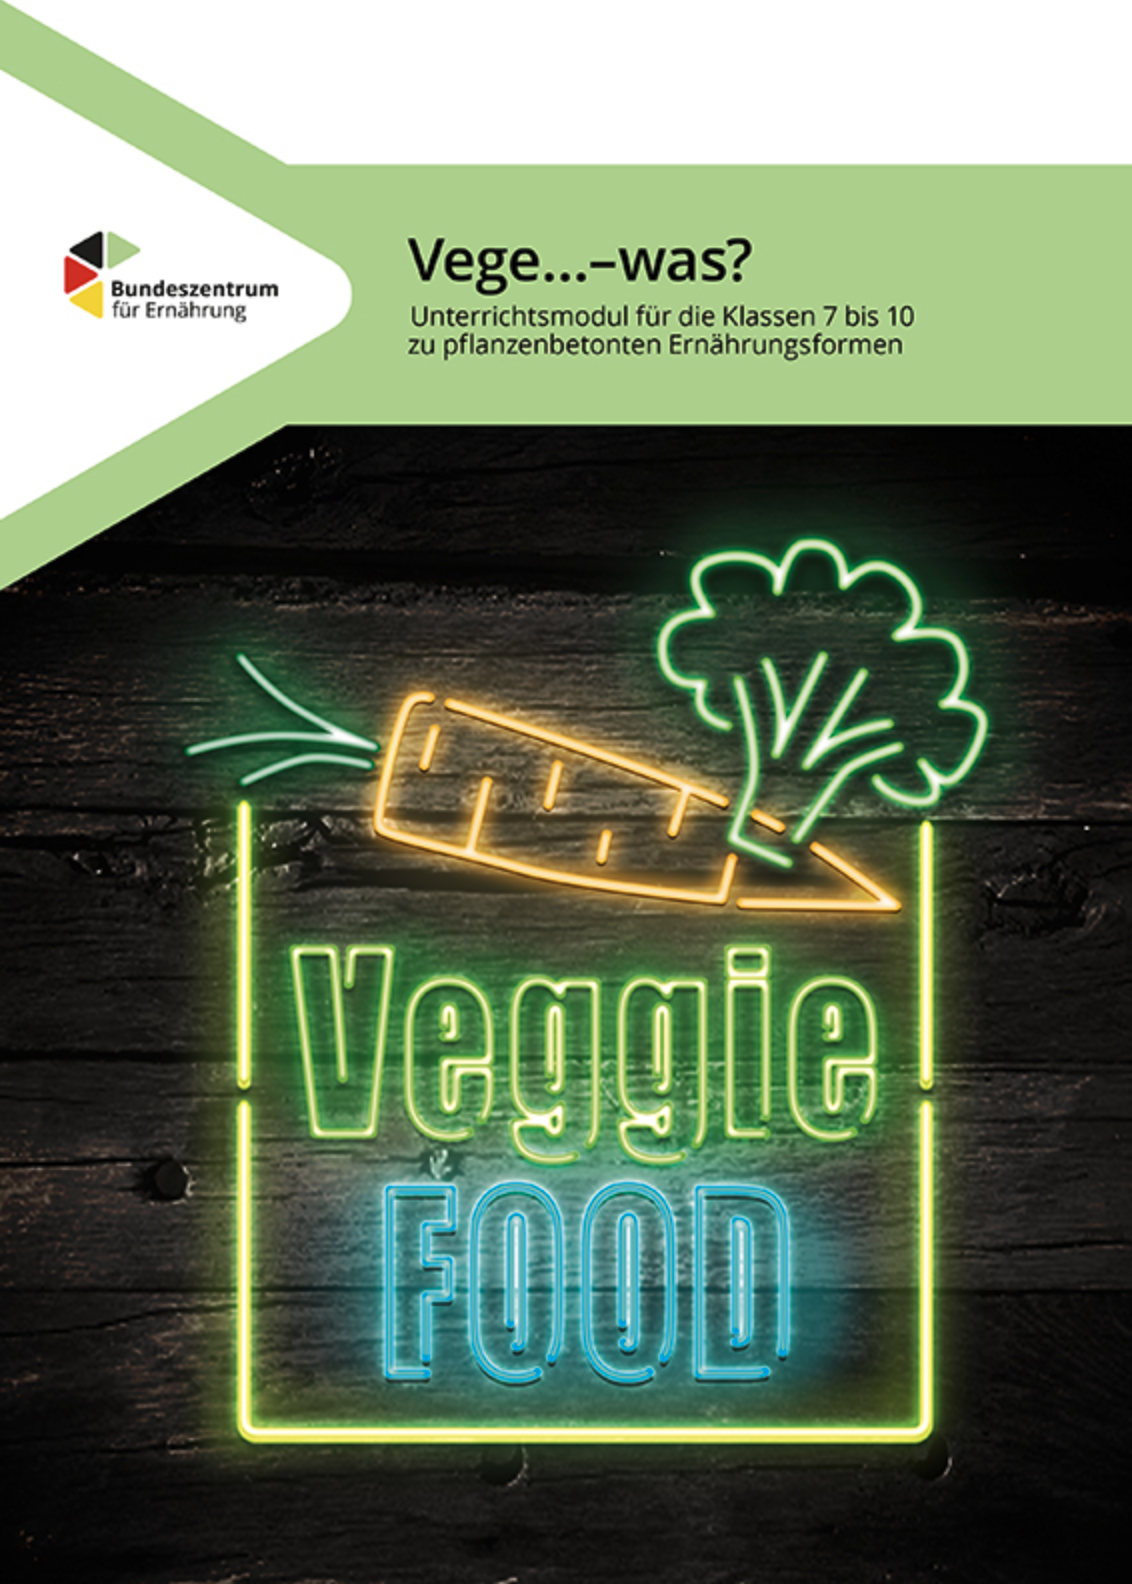 Neonschild mit Aufschrift Veggie Food, einer Möhre und einem Brokkoli-Röschen